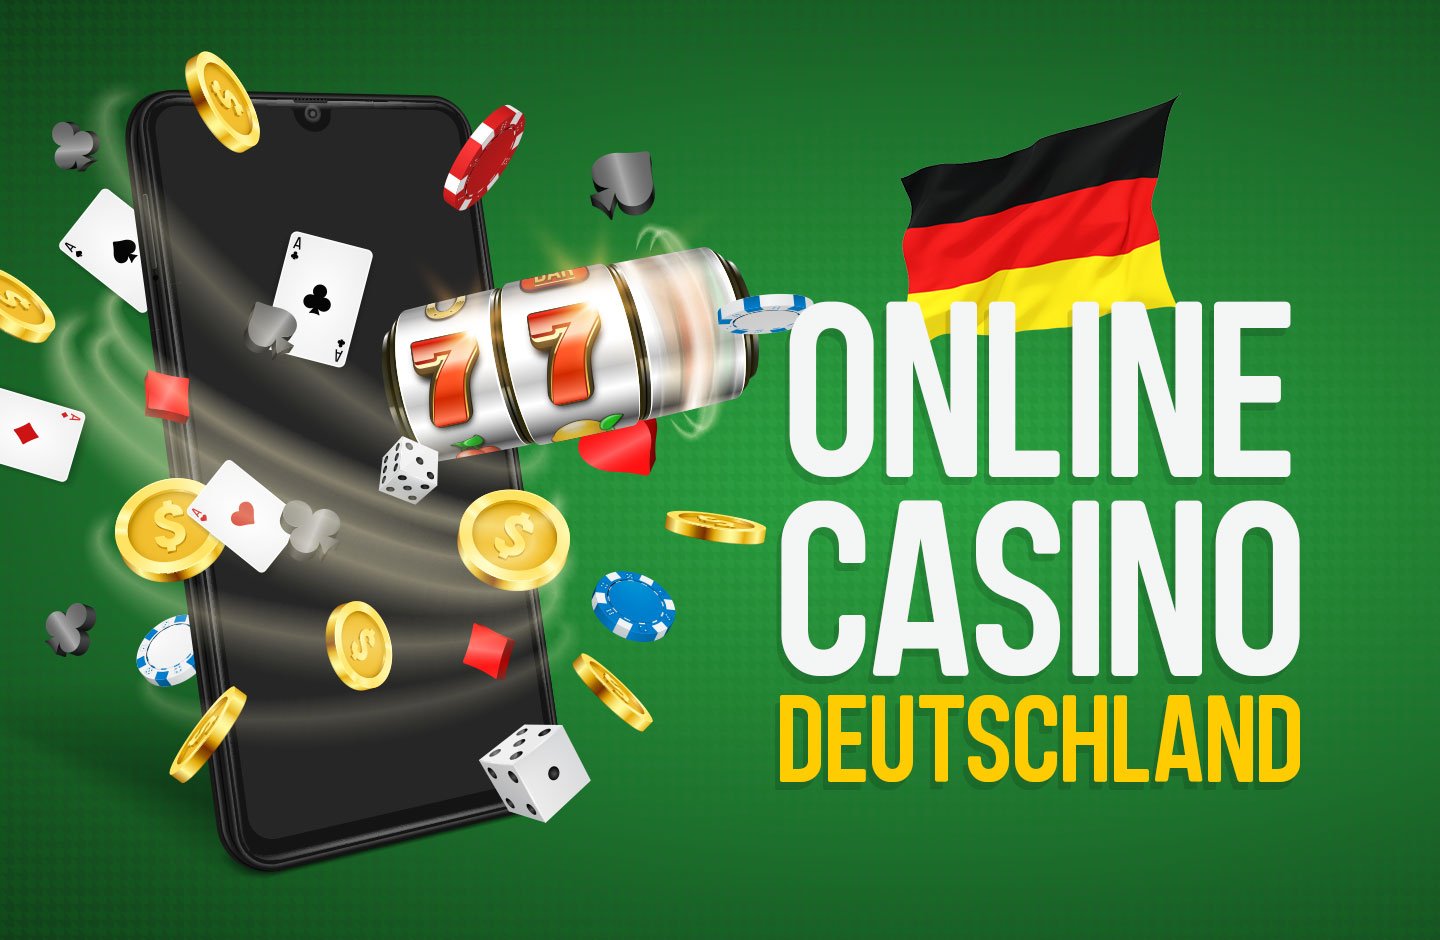 Online Casino Echtgeld spielen Für Geld